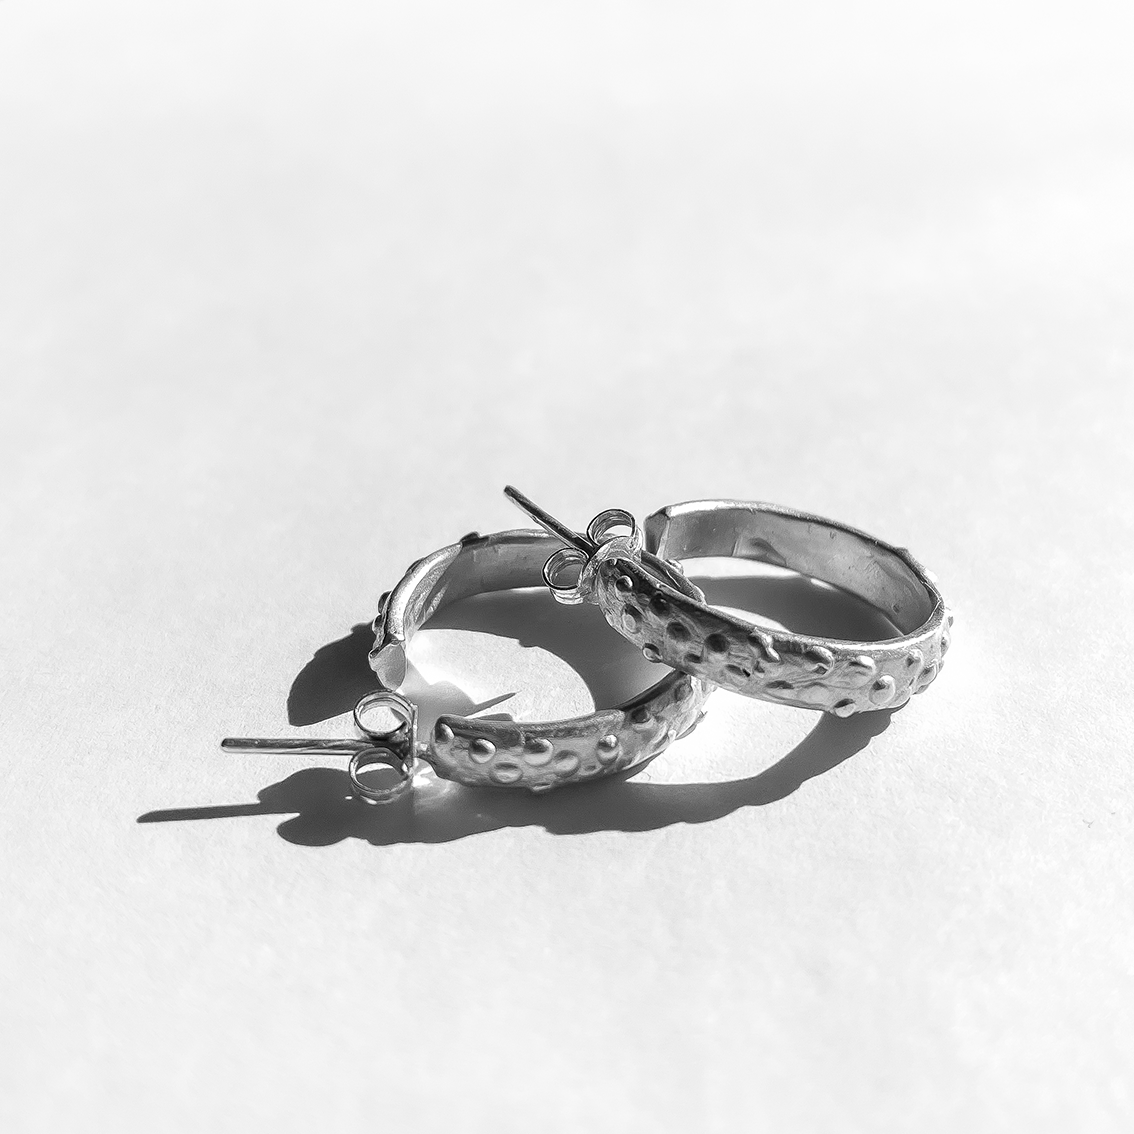 A pair of textured Sterling Silver hoop Earrings